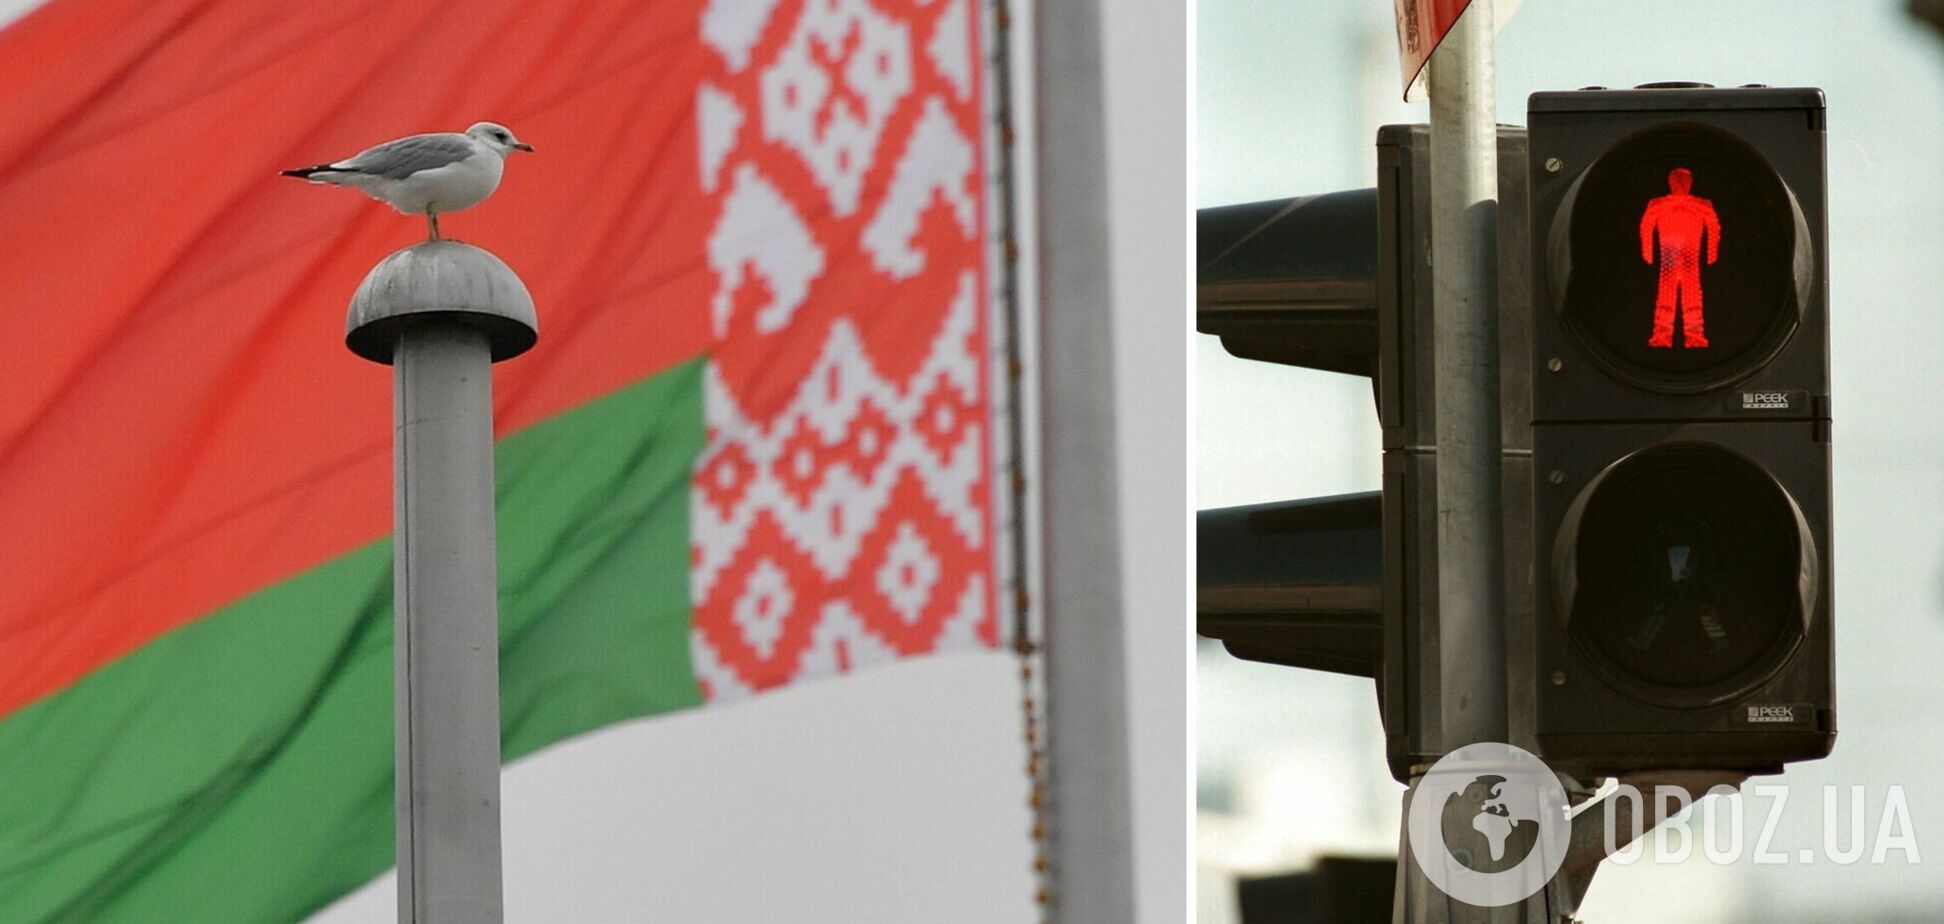 Беларусь не примут во Всемирную торговую организацию – из-за соучастия в войне против Украины